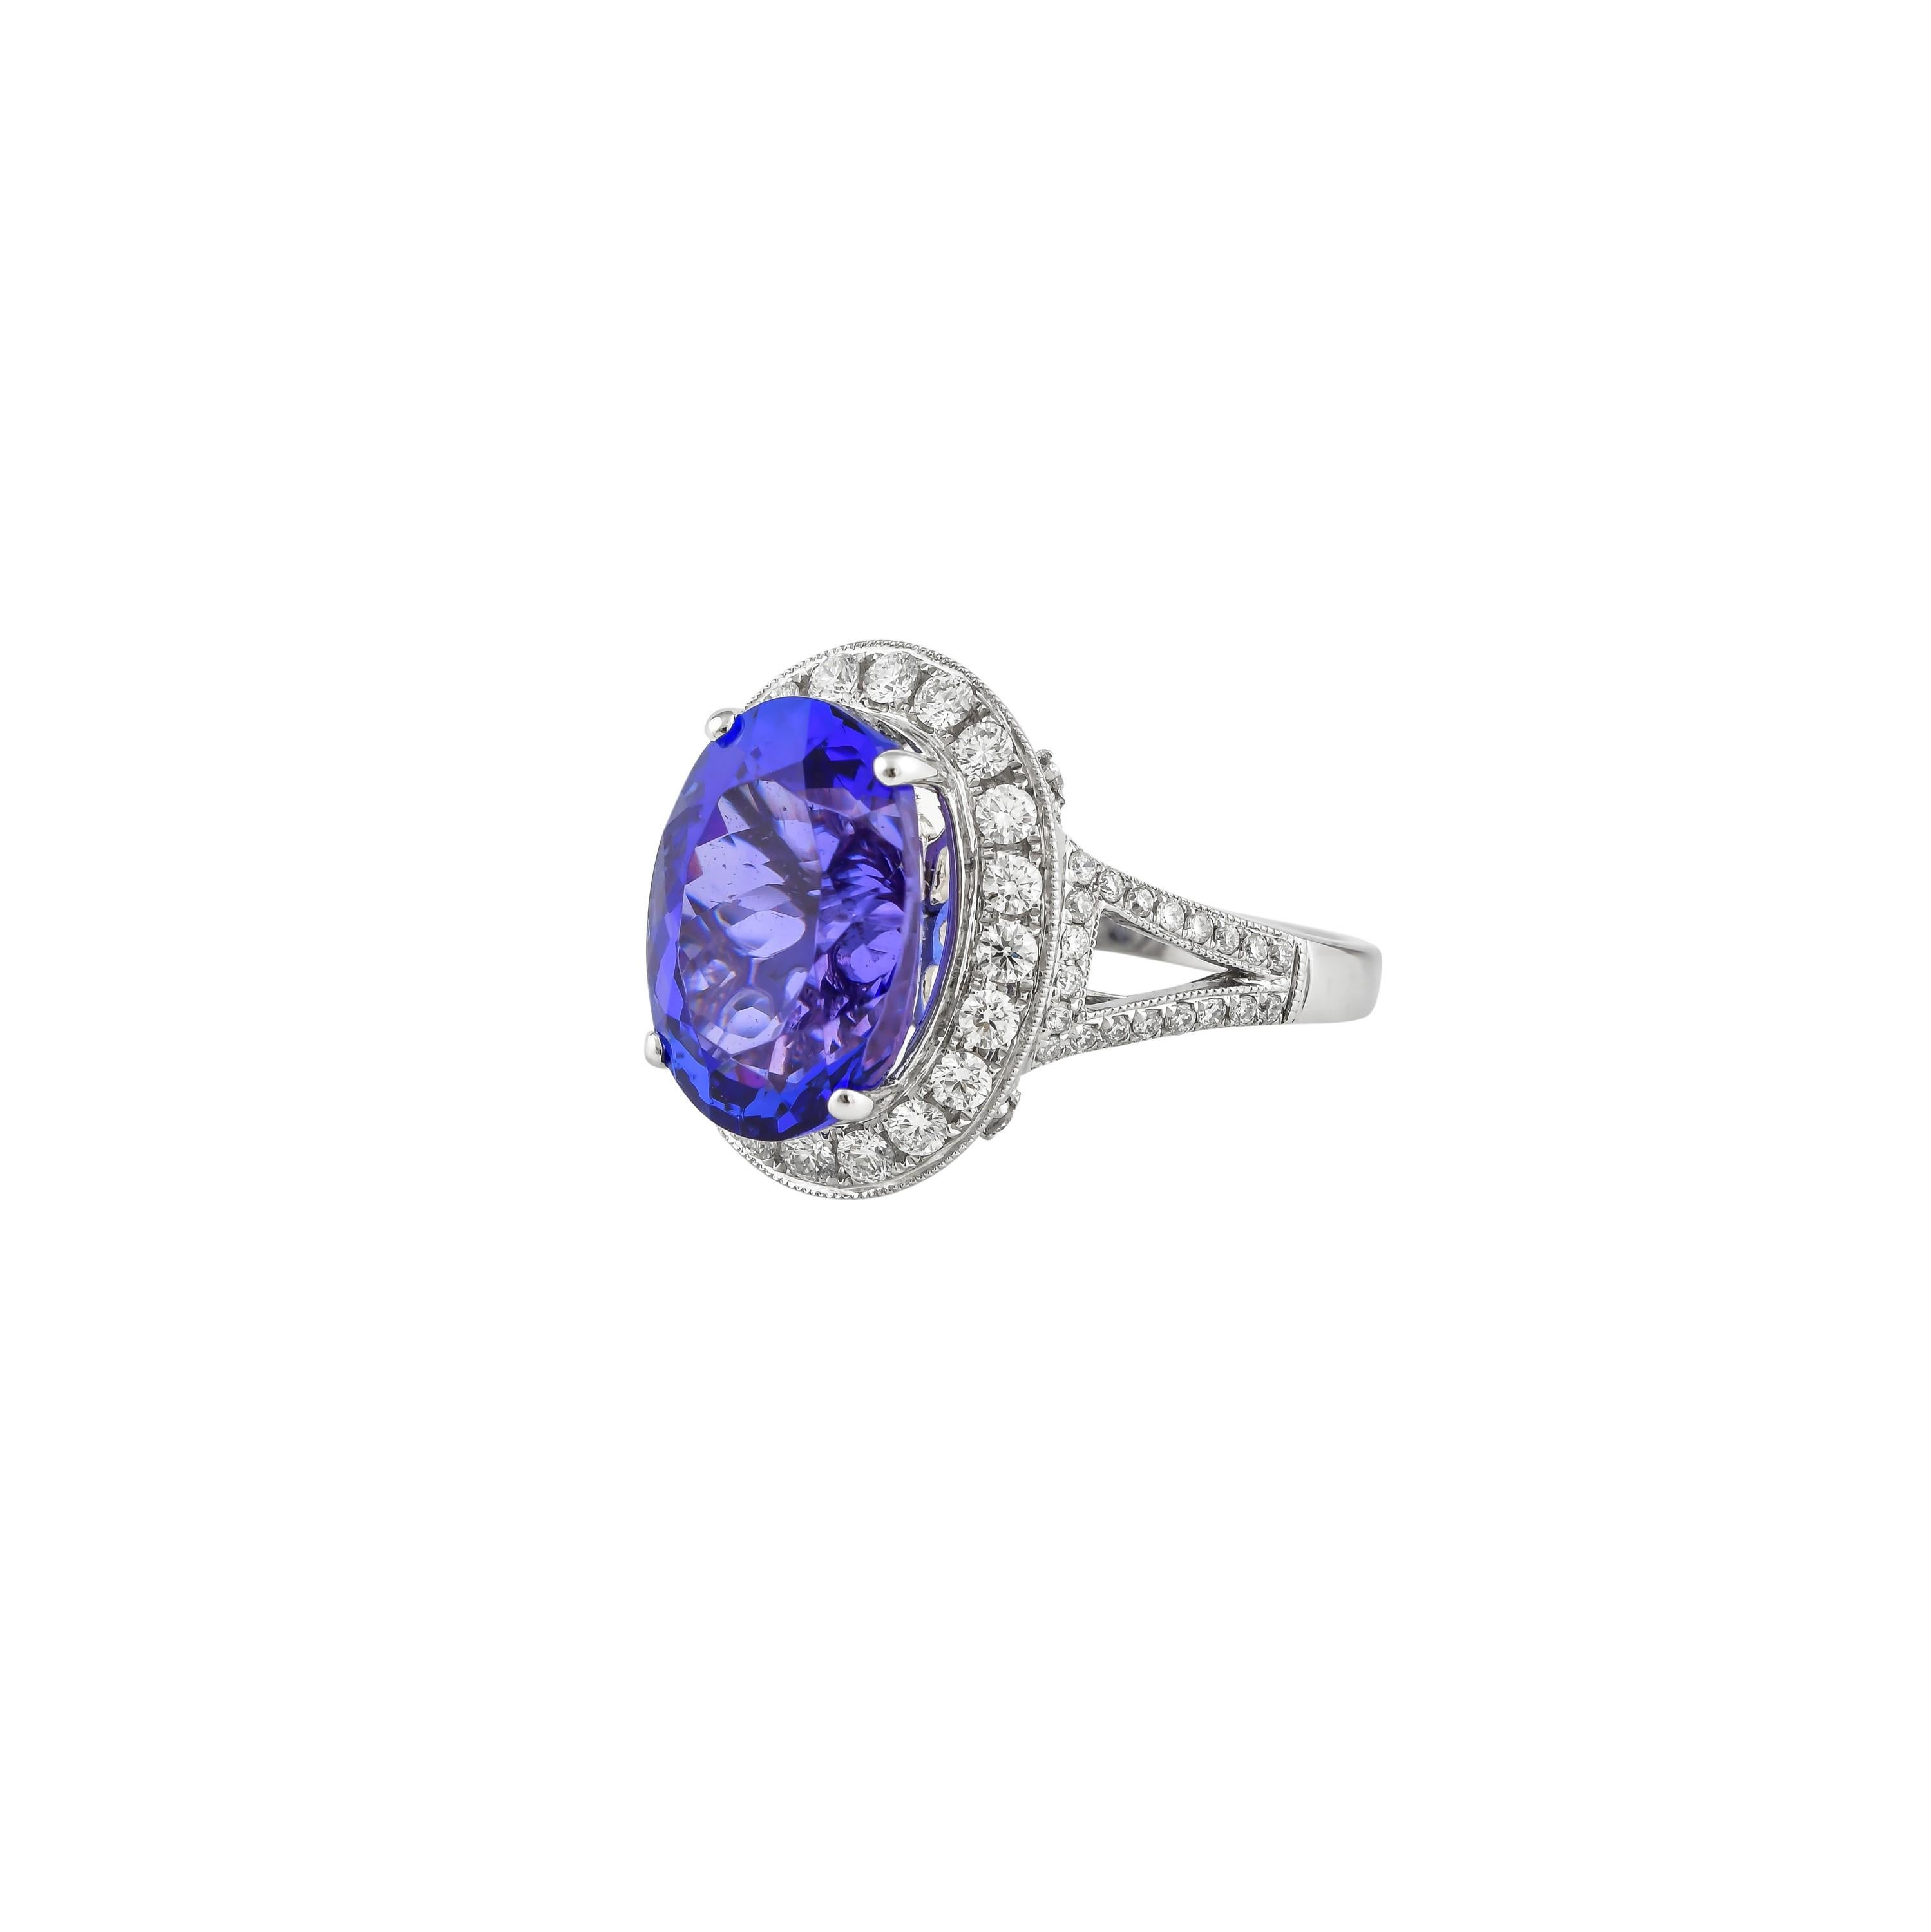 7.8 carat diamond ring price